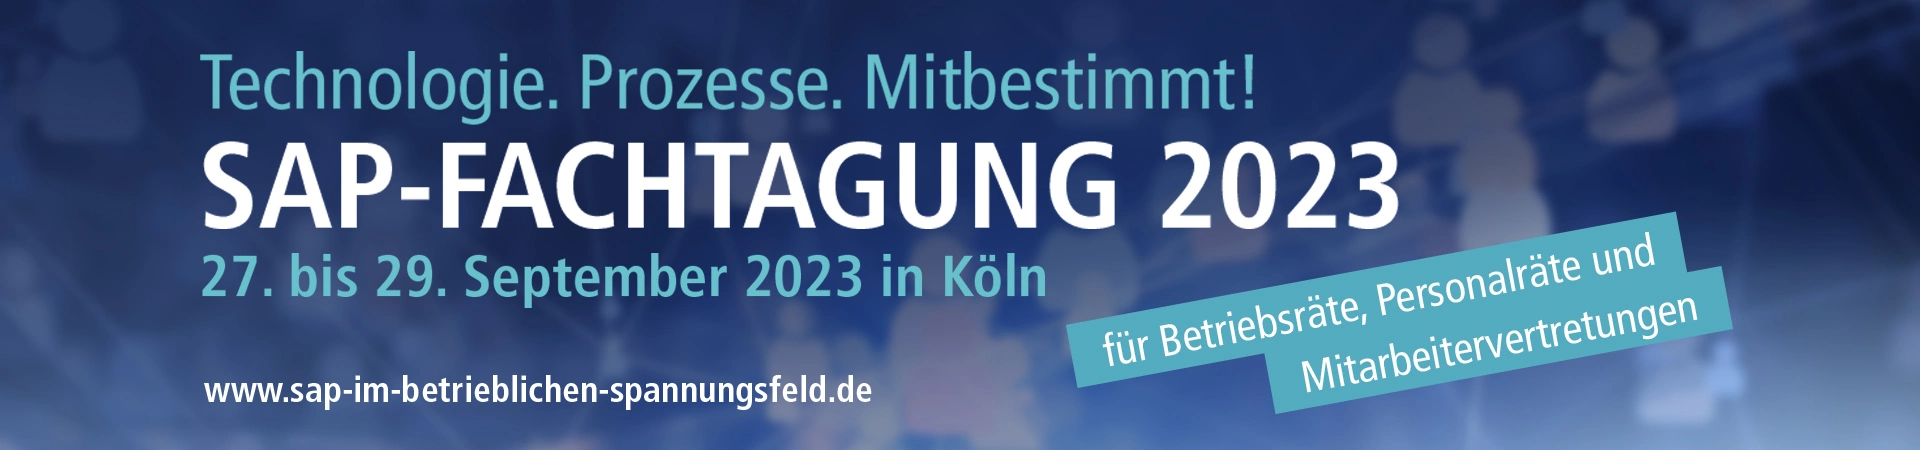 Banner zur SAP Fachtagung am 27. bis 29. September 2023 in Köln für Betriebs- und Personalräte